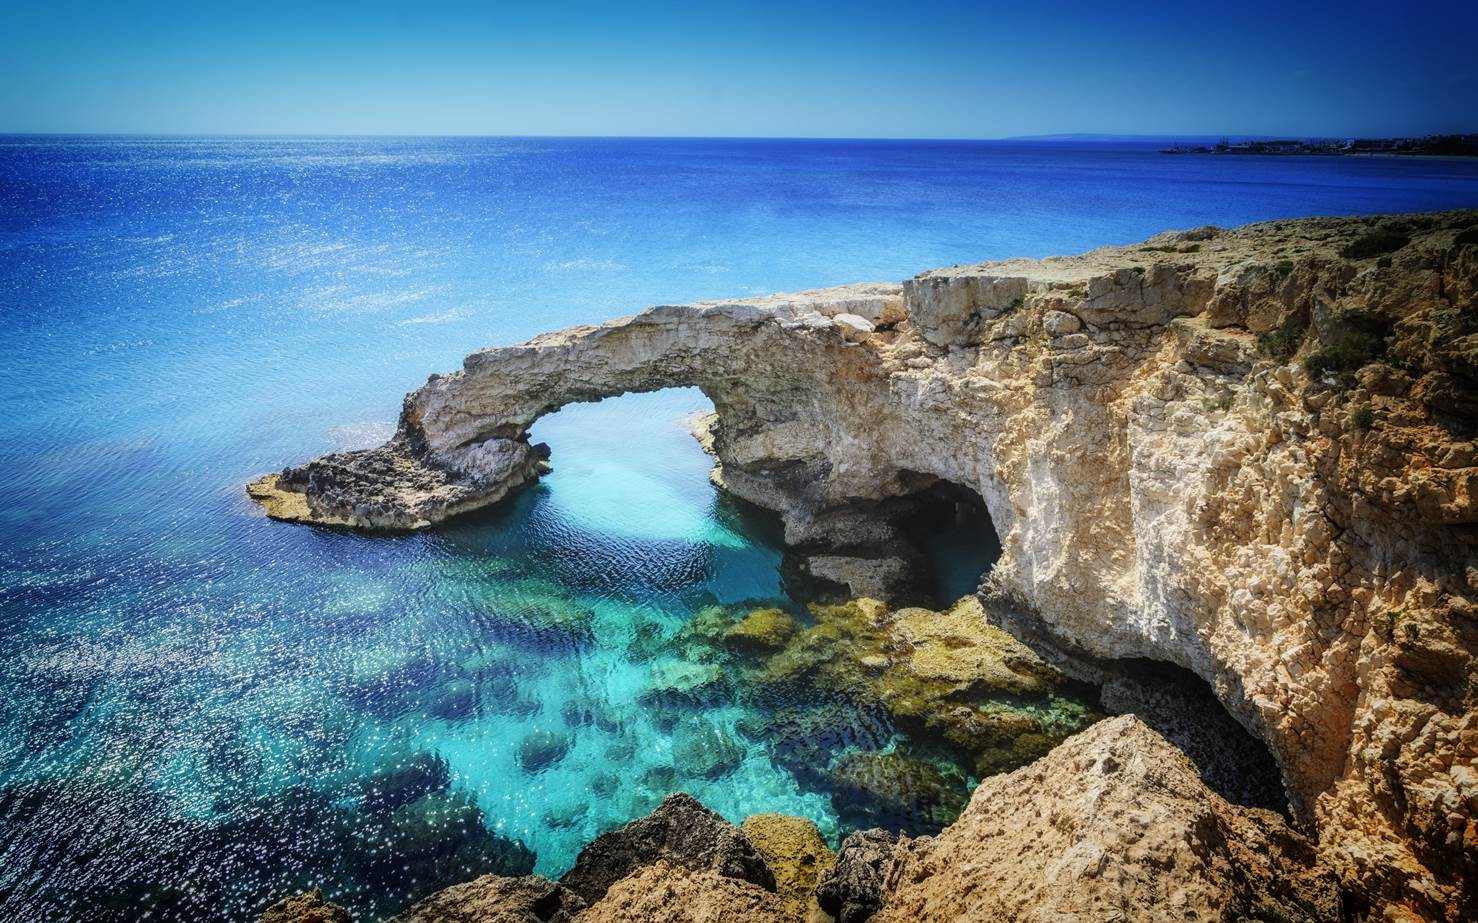 Chipre, la isla del Mediterráneo que rindió culto a Afrodita